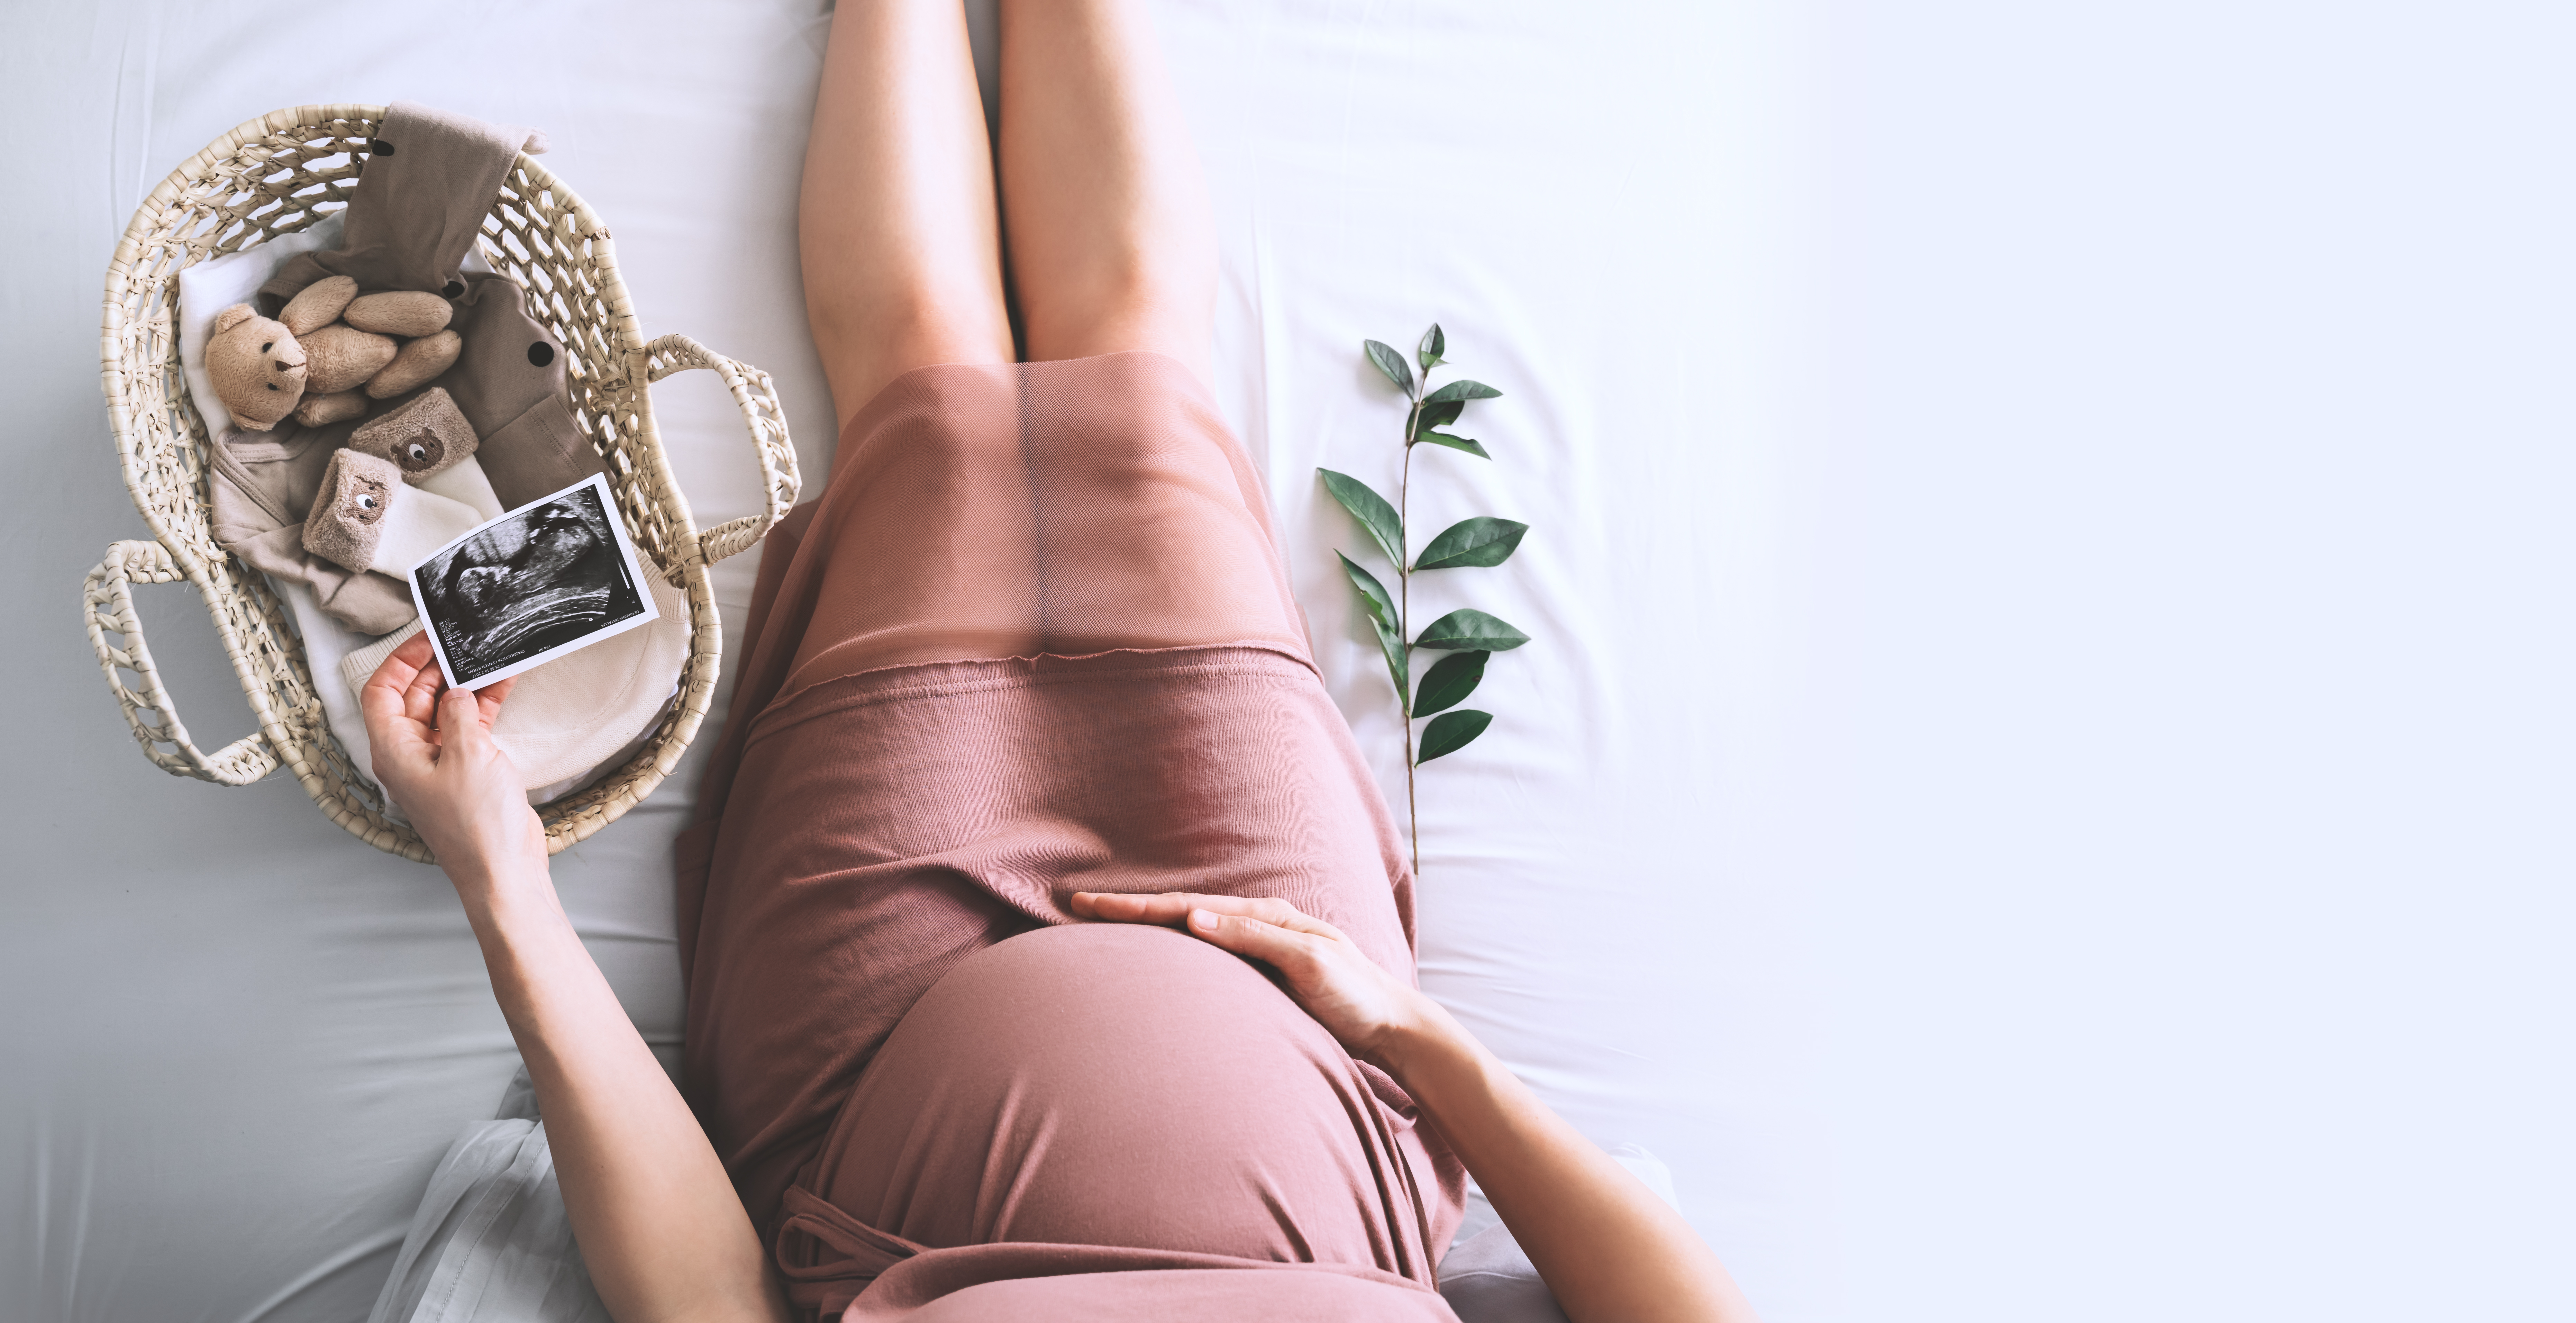 Une femme tenant la photo de l'échographie de son bébé dans une main et son ventre de femme enceinte dans l'autre, à côté d'un panier de fournitures pour bébé | Source : Shutterstock